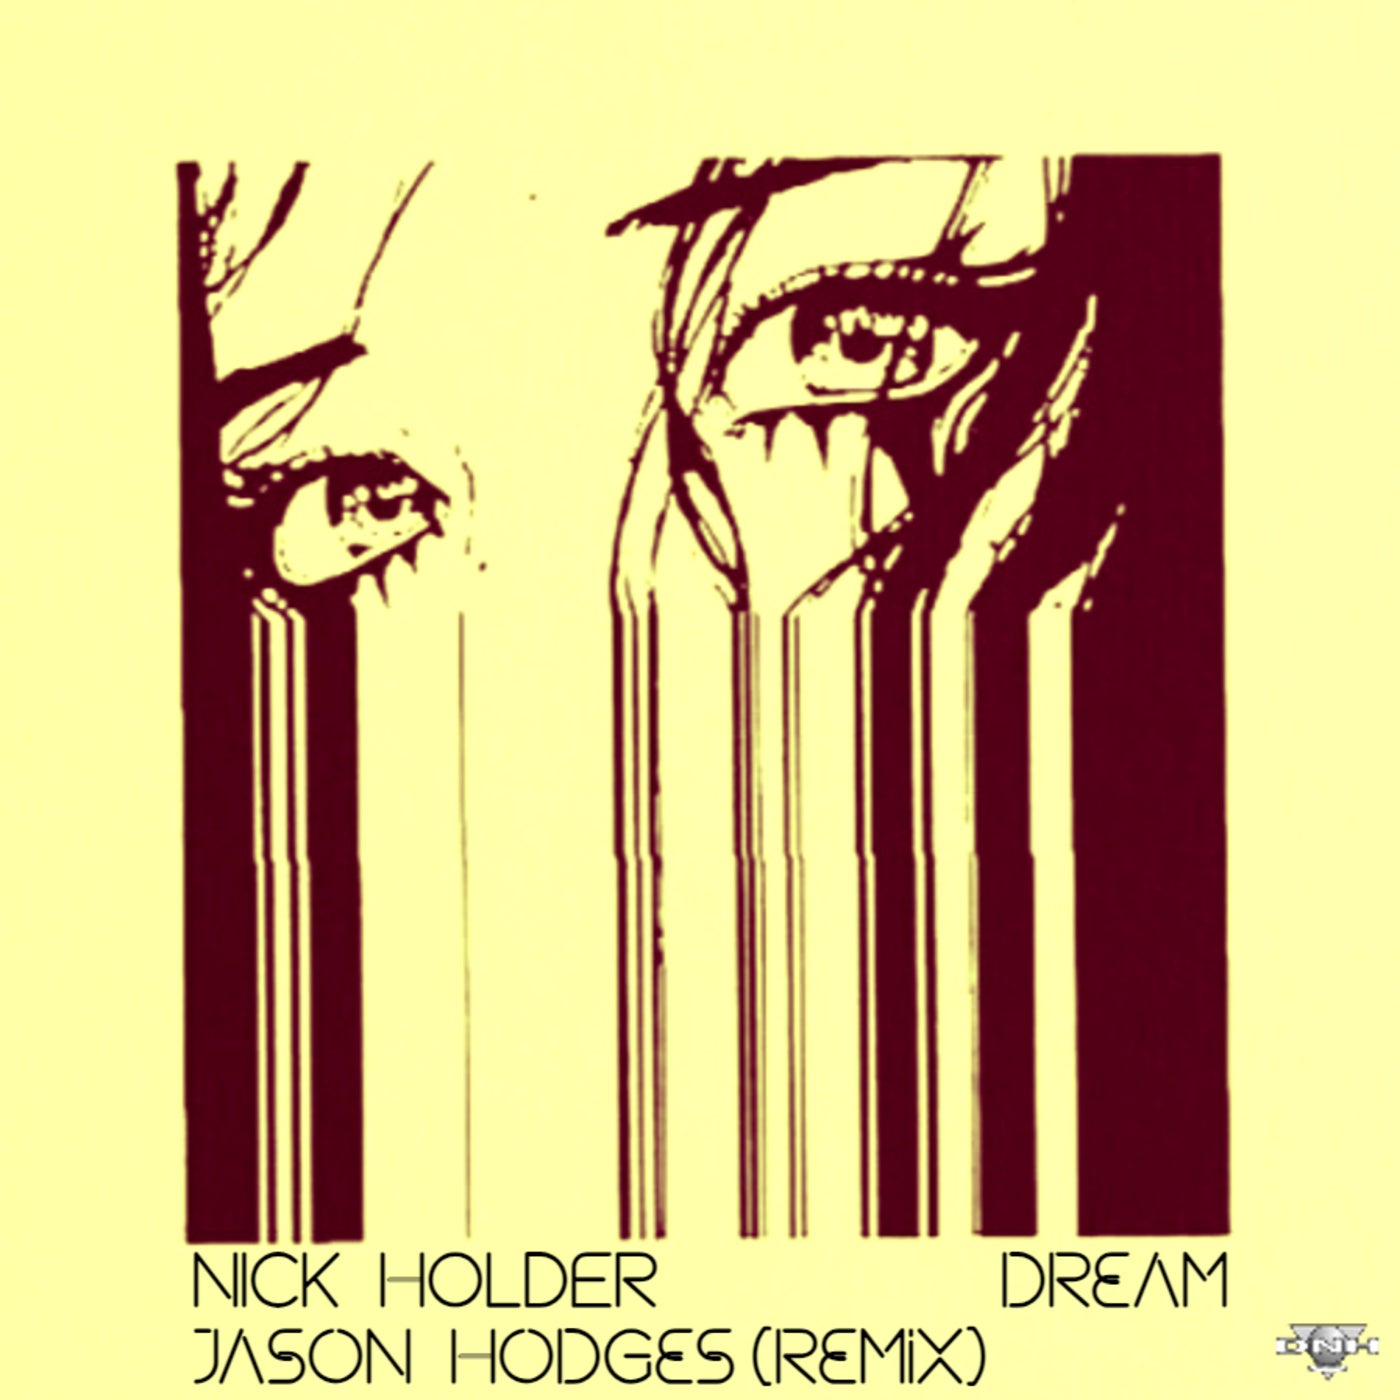 Dream (Jason Hodges Remix)